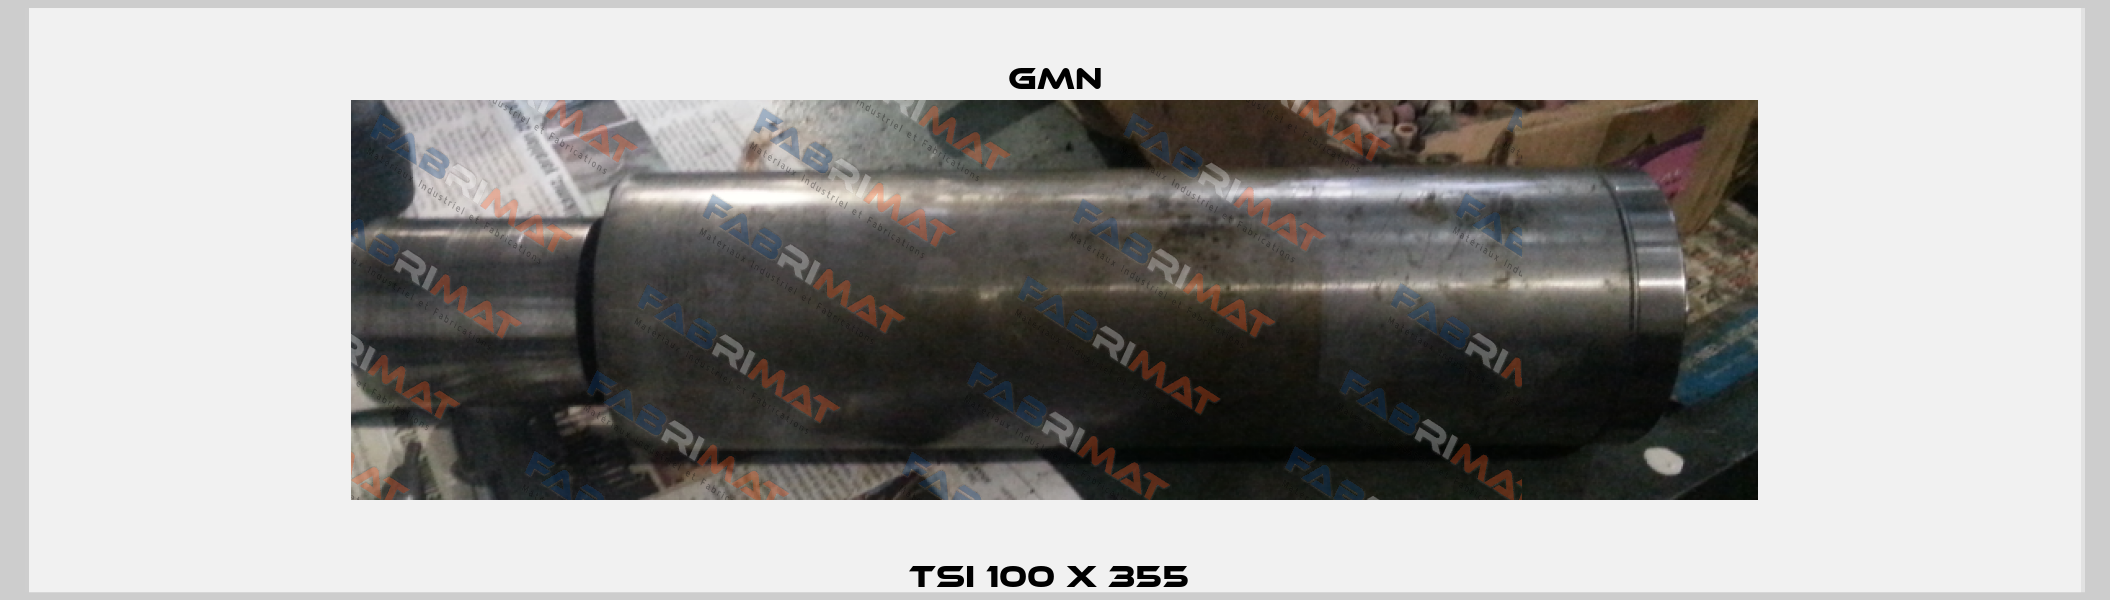 TSI 100 x 355  Gmn